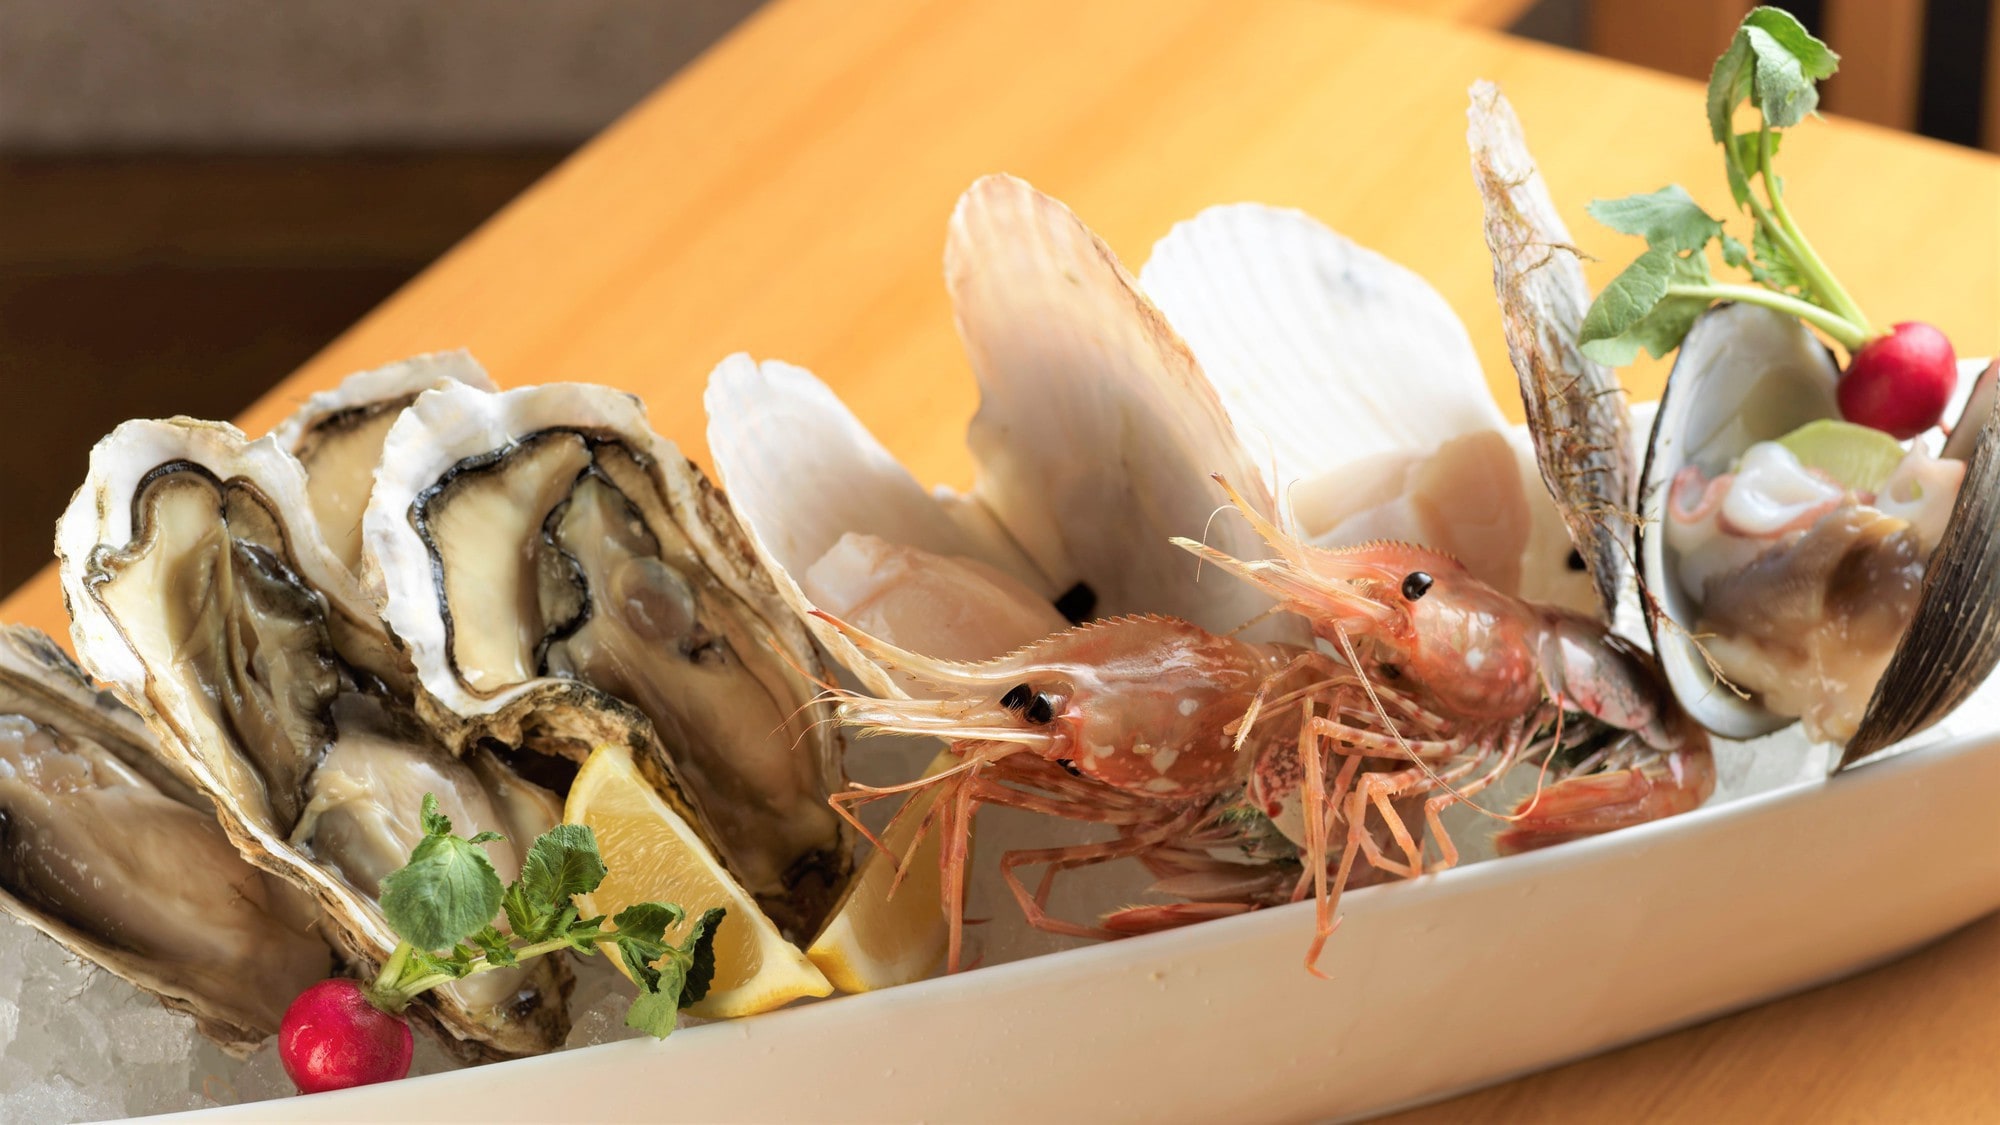 [Buffet] Hidangan utama spesial Chef "Seasonal seafood platter" (1 contoh untuk 2 orang)